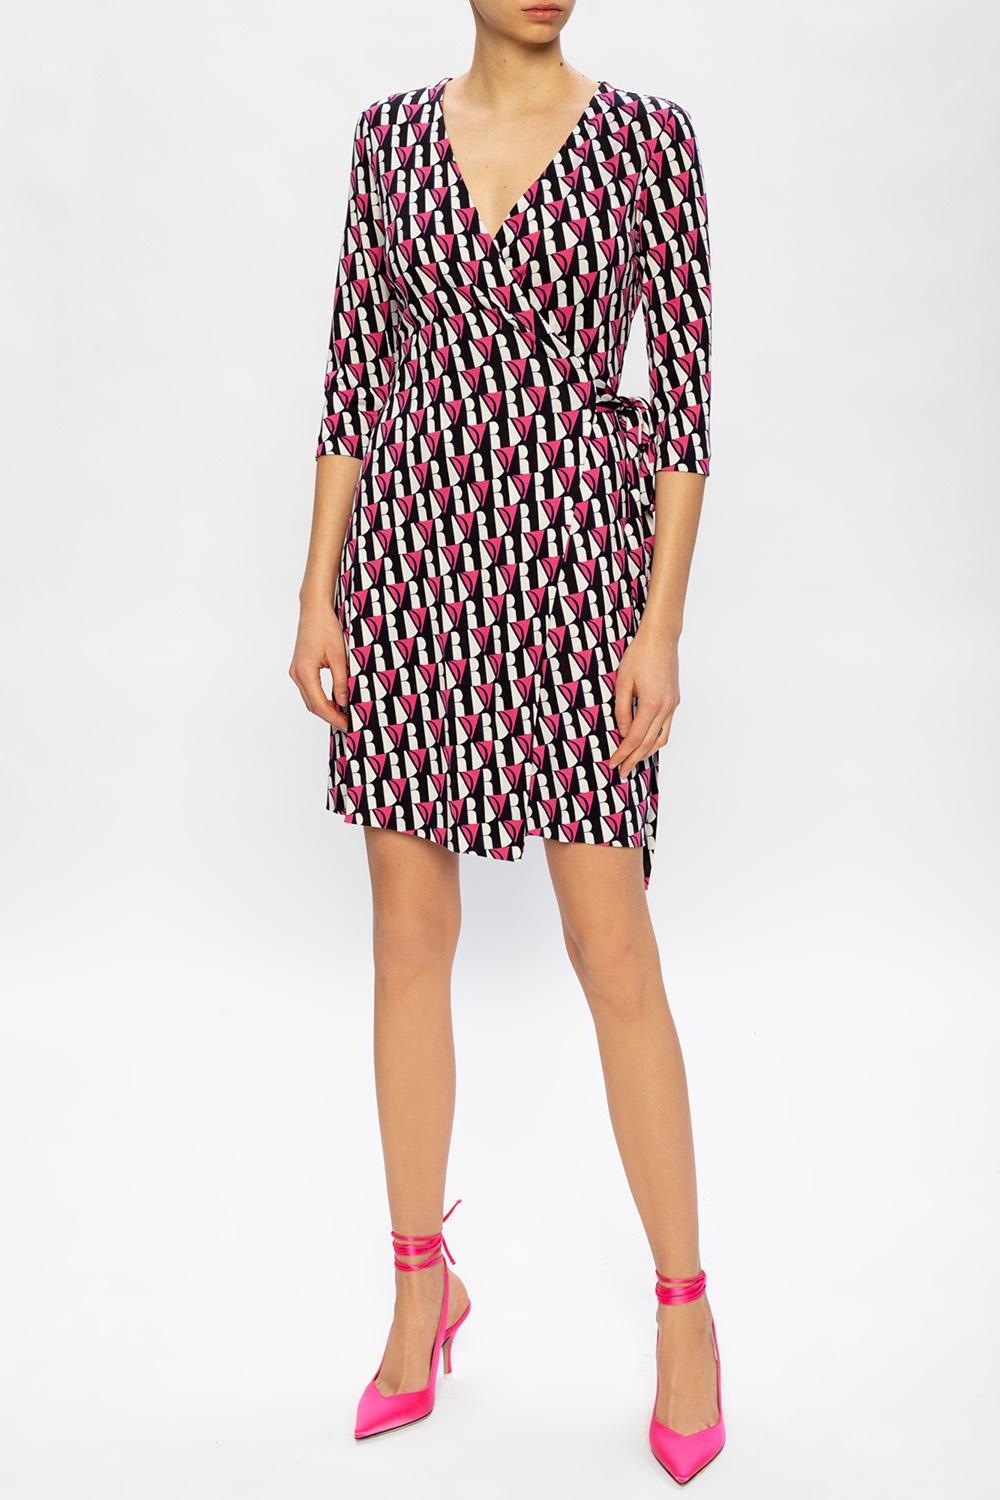 Diane Von Furstenberg Wrap dress | Women's Clothing | IetpShops